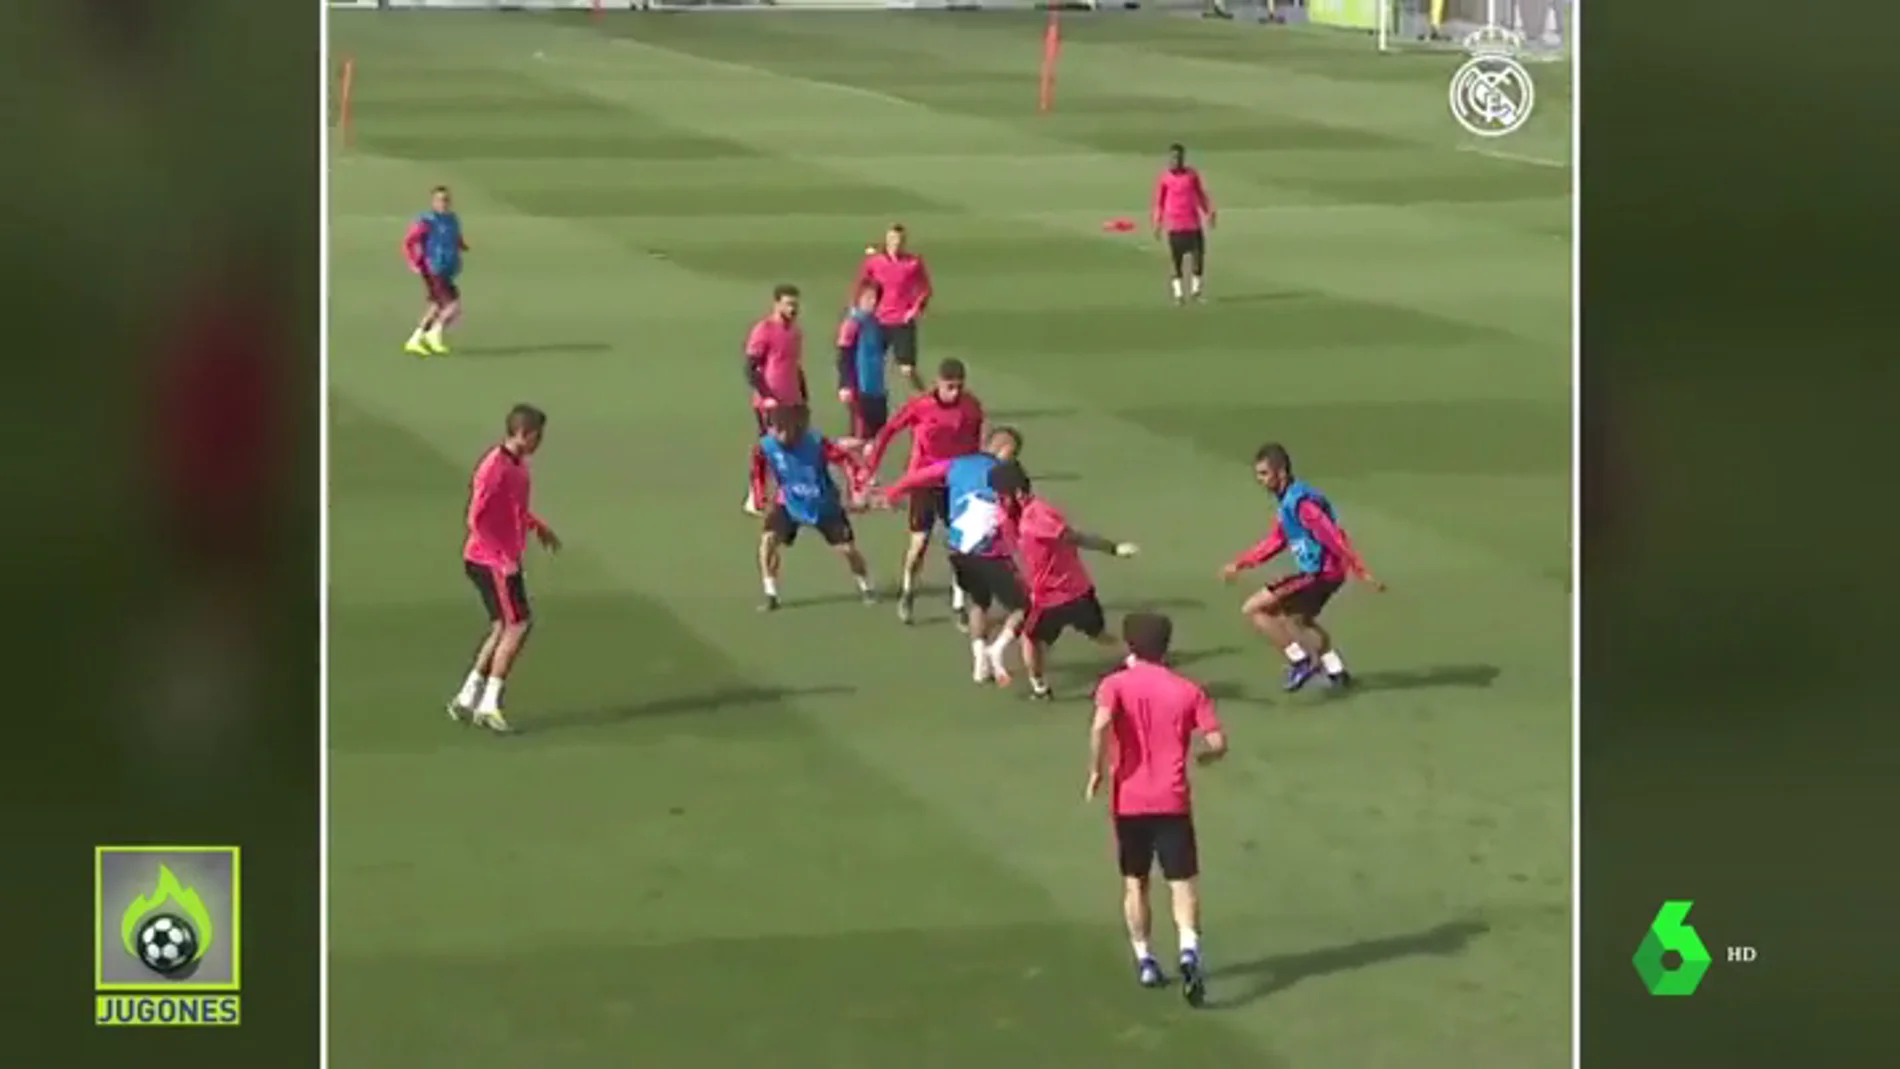 El jugadón de Isco en el entrenamiento del Real Madrid que se ha hecho viral